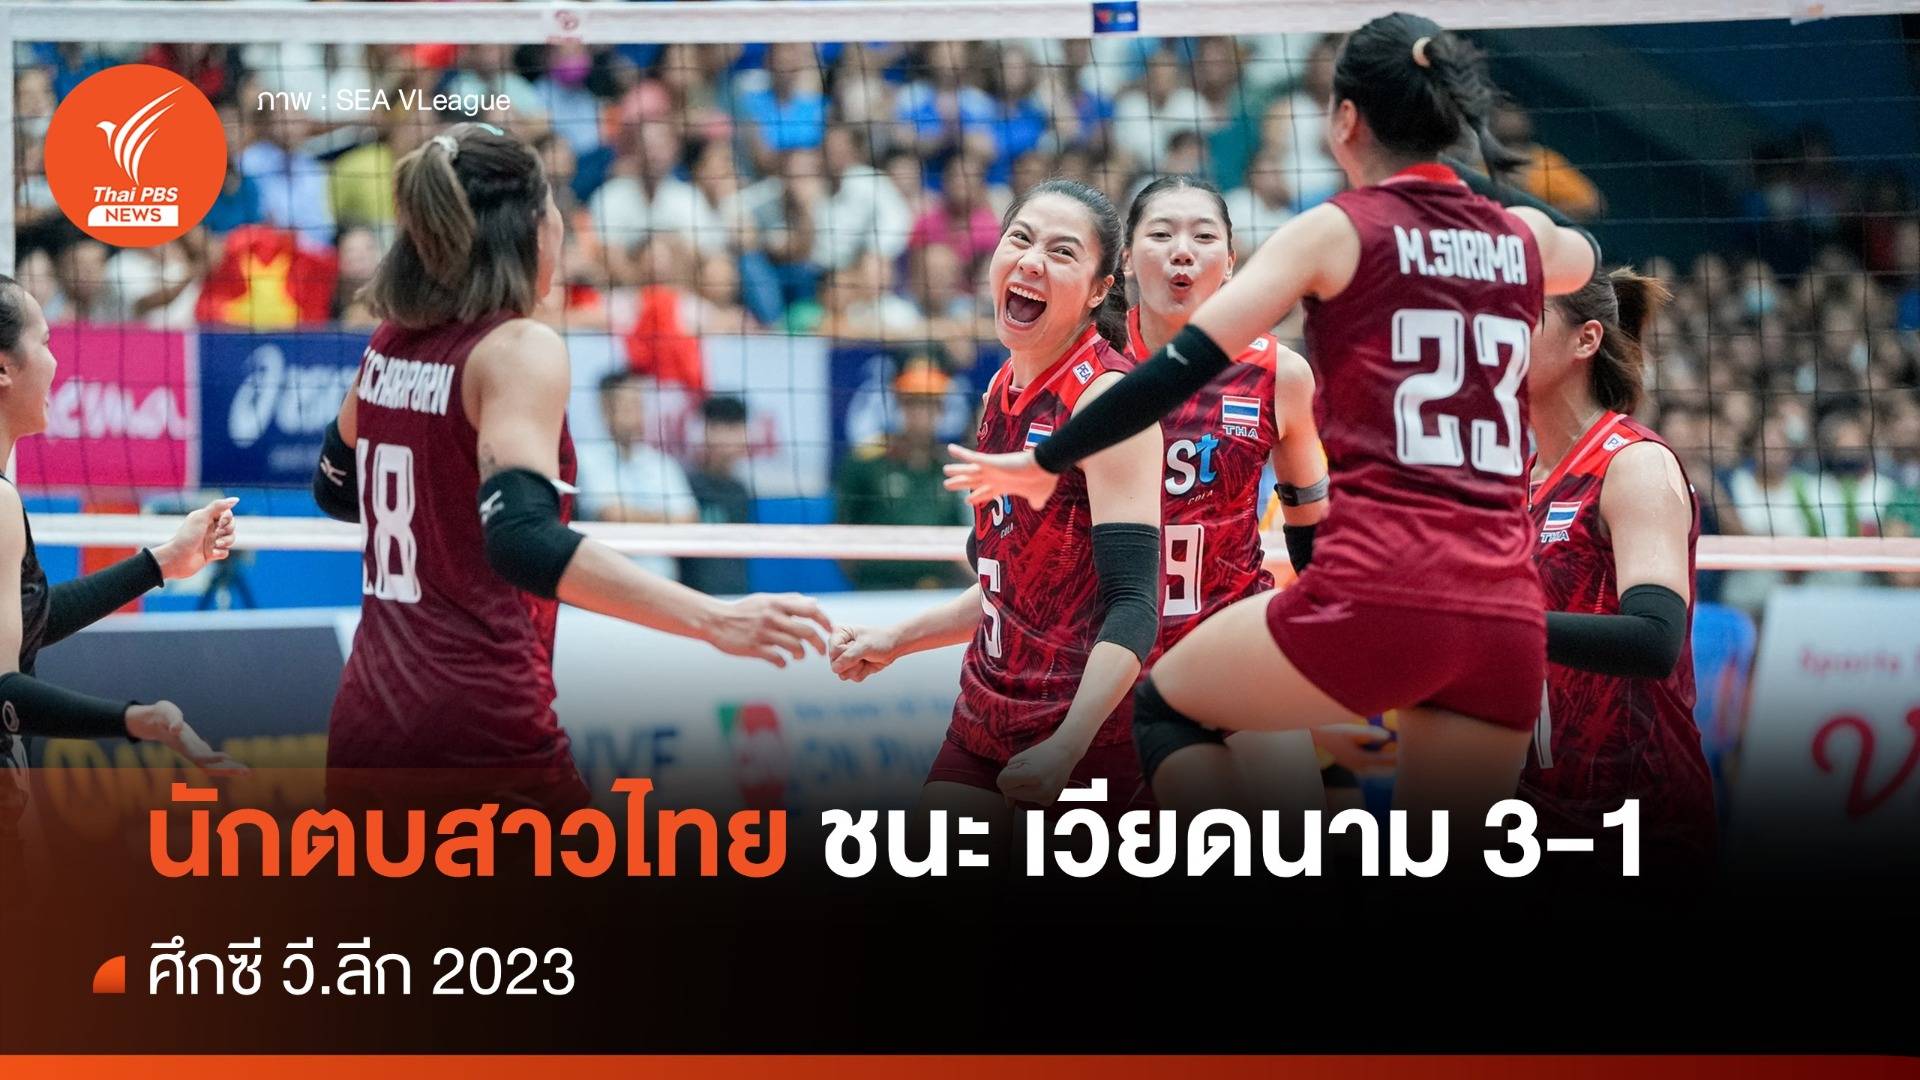 วอลเลย์บอลหญิงไทย ชนะ เวียดนาม 3-1 คว้าแชมป์ ซี.วีลีก สนามแรก